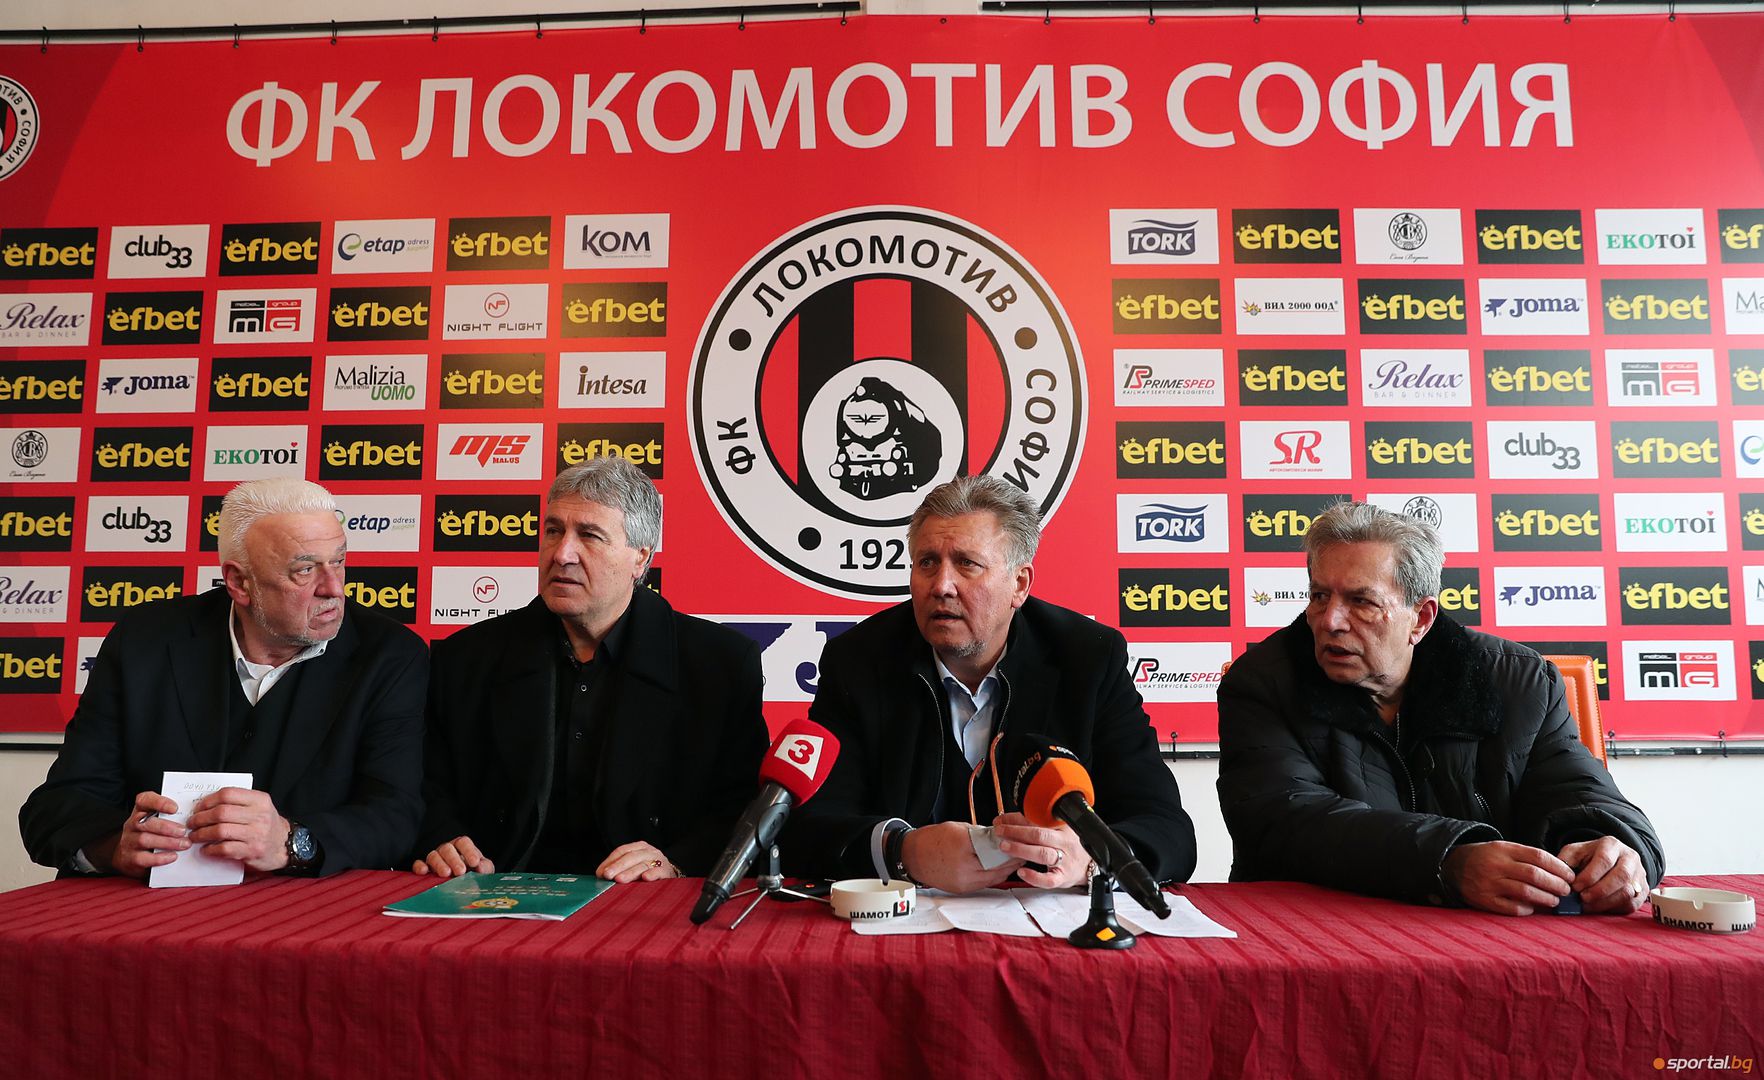 Ръководството на Локомотив София с първа пресконференция за годината